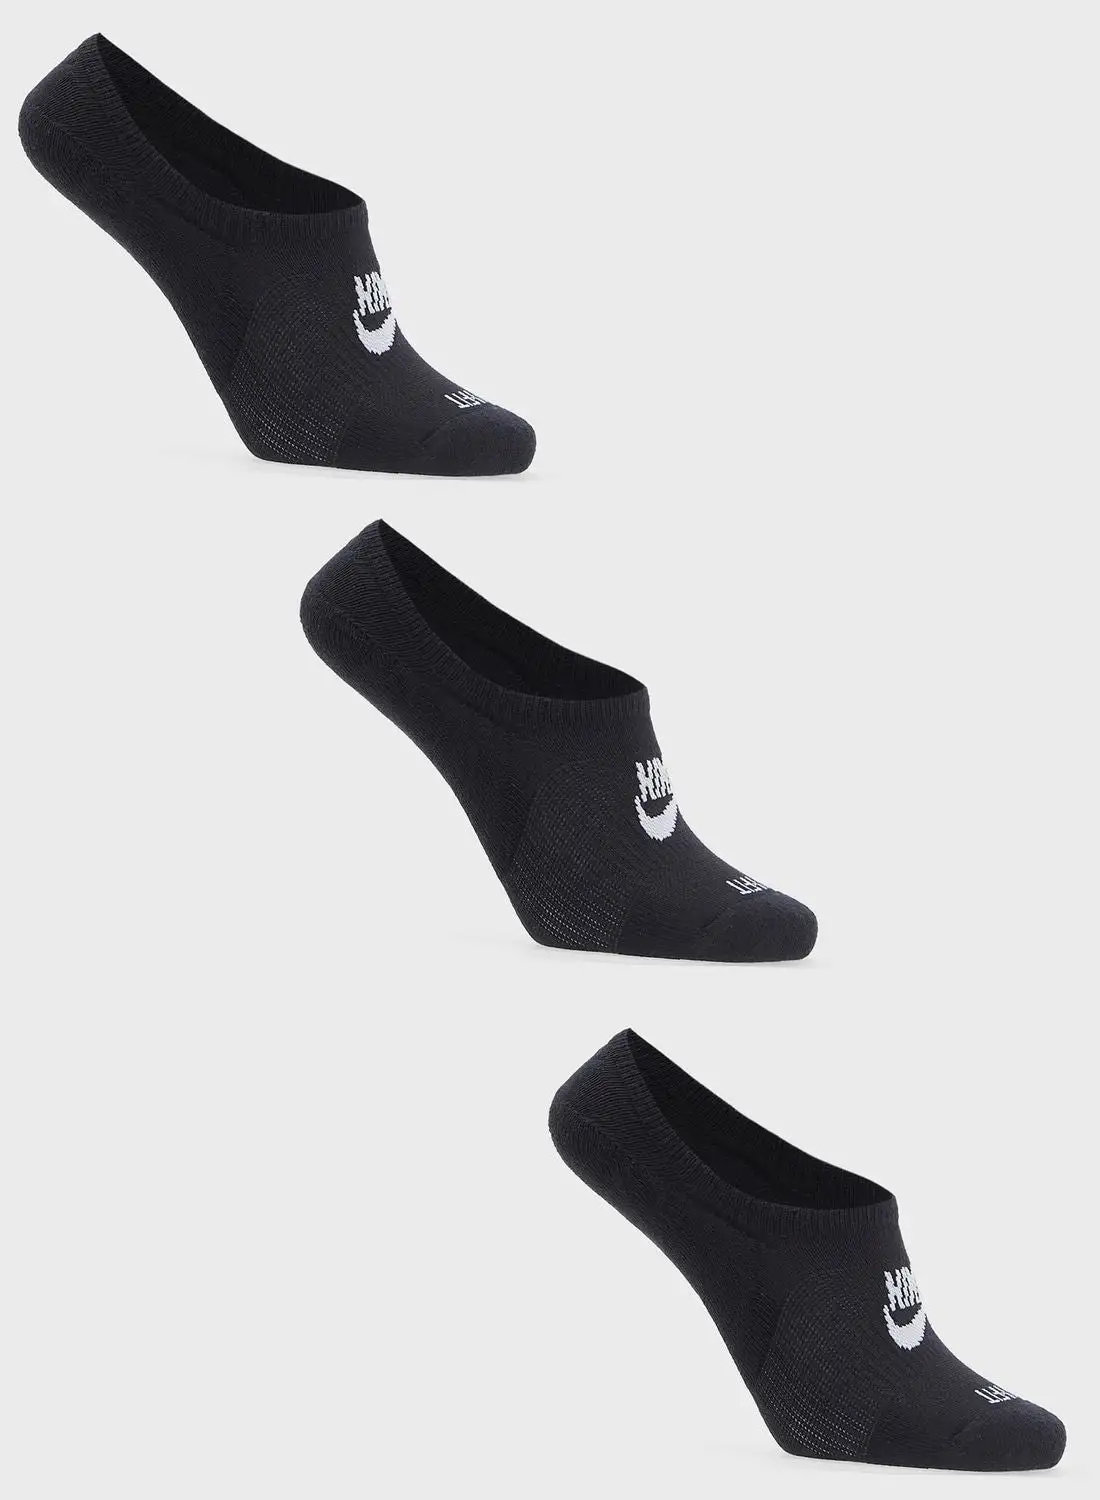 مجموعة من 3 جوارب للقدم من Nike Everyday Futura